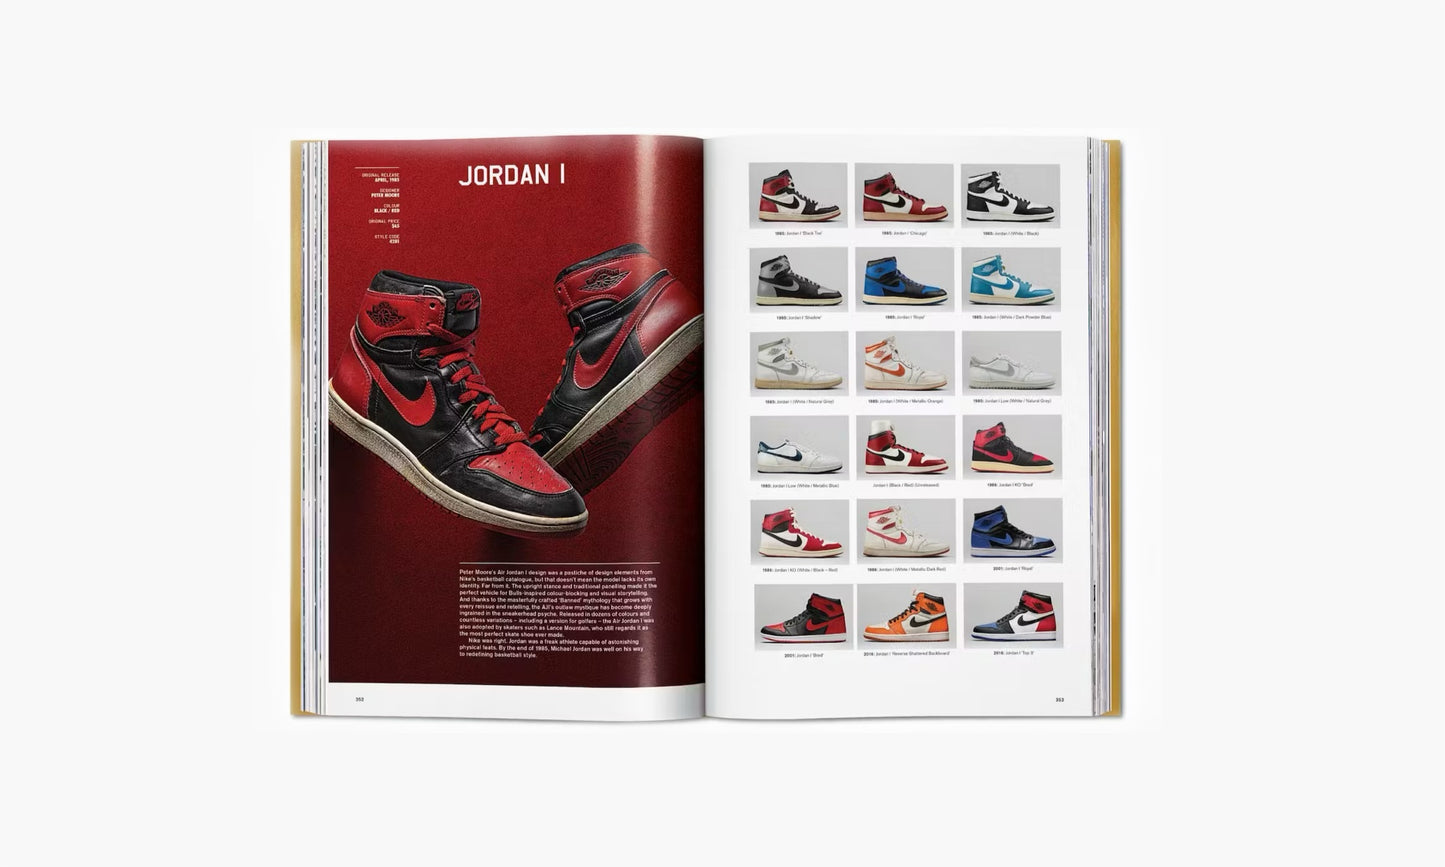 Taschen Sneaker Freaker. The Ultimate Sneaker Book | The Sortage